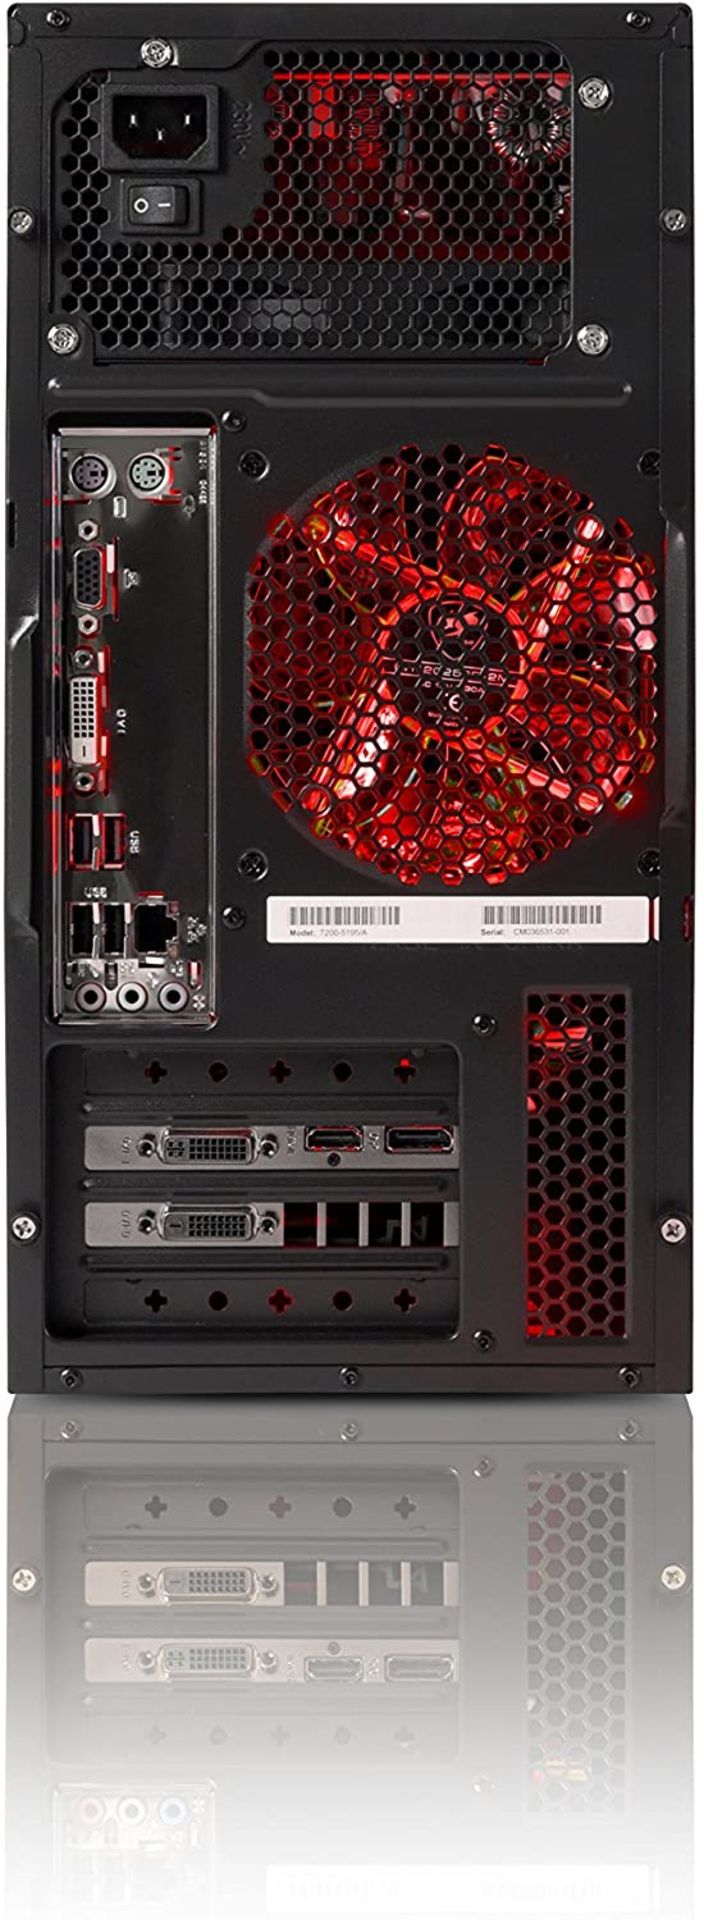 (69) 1 x Grade B - Zoostorm Quest Desktop PC - (Black) (AMD A8 7650K, 8 GB RAM, 1 TB HDD, Radeo... - Image 5 of 5